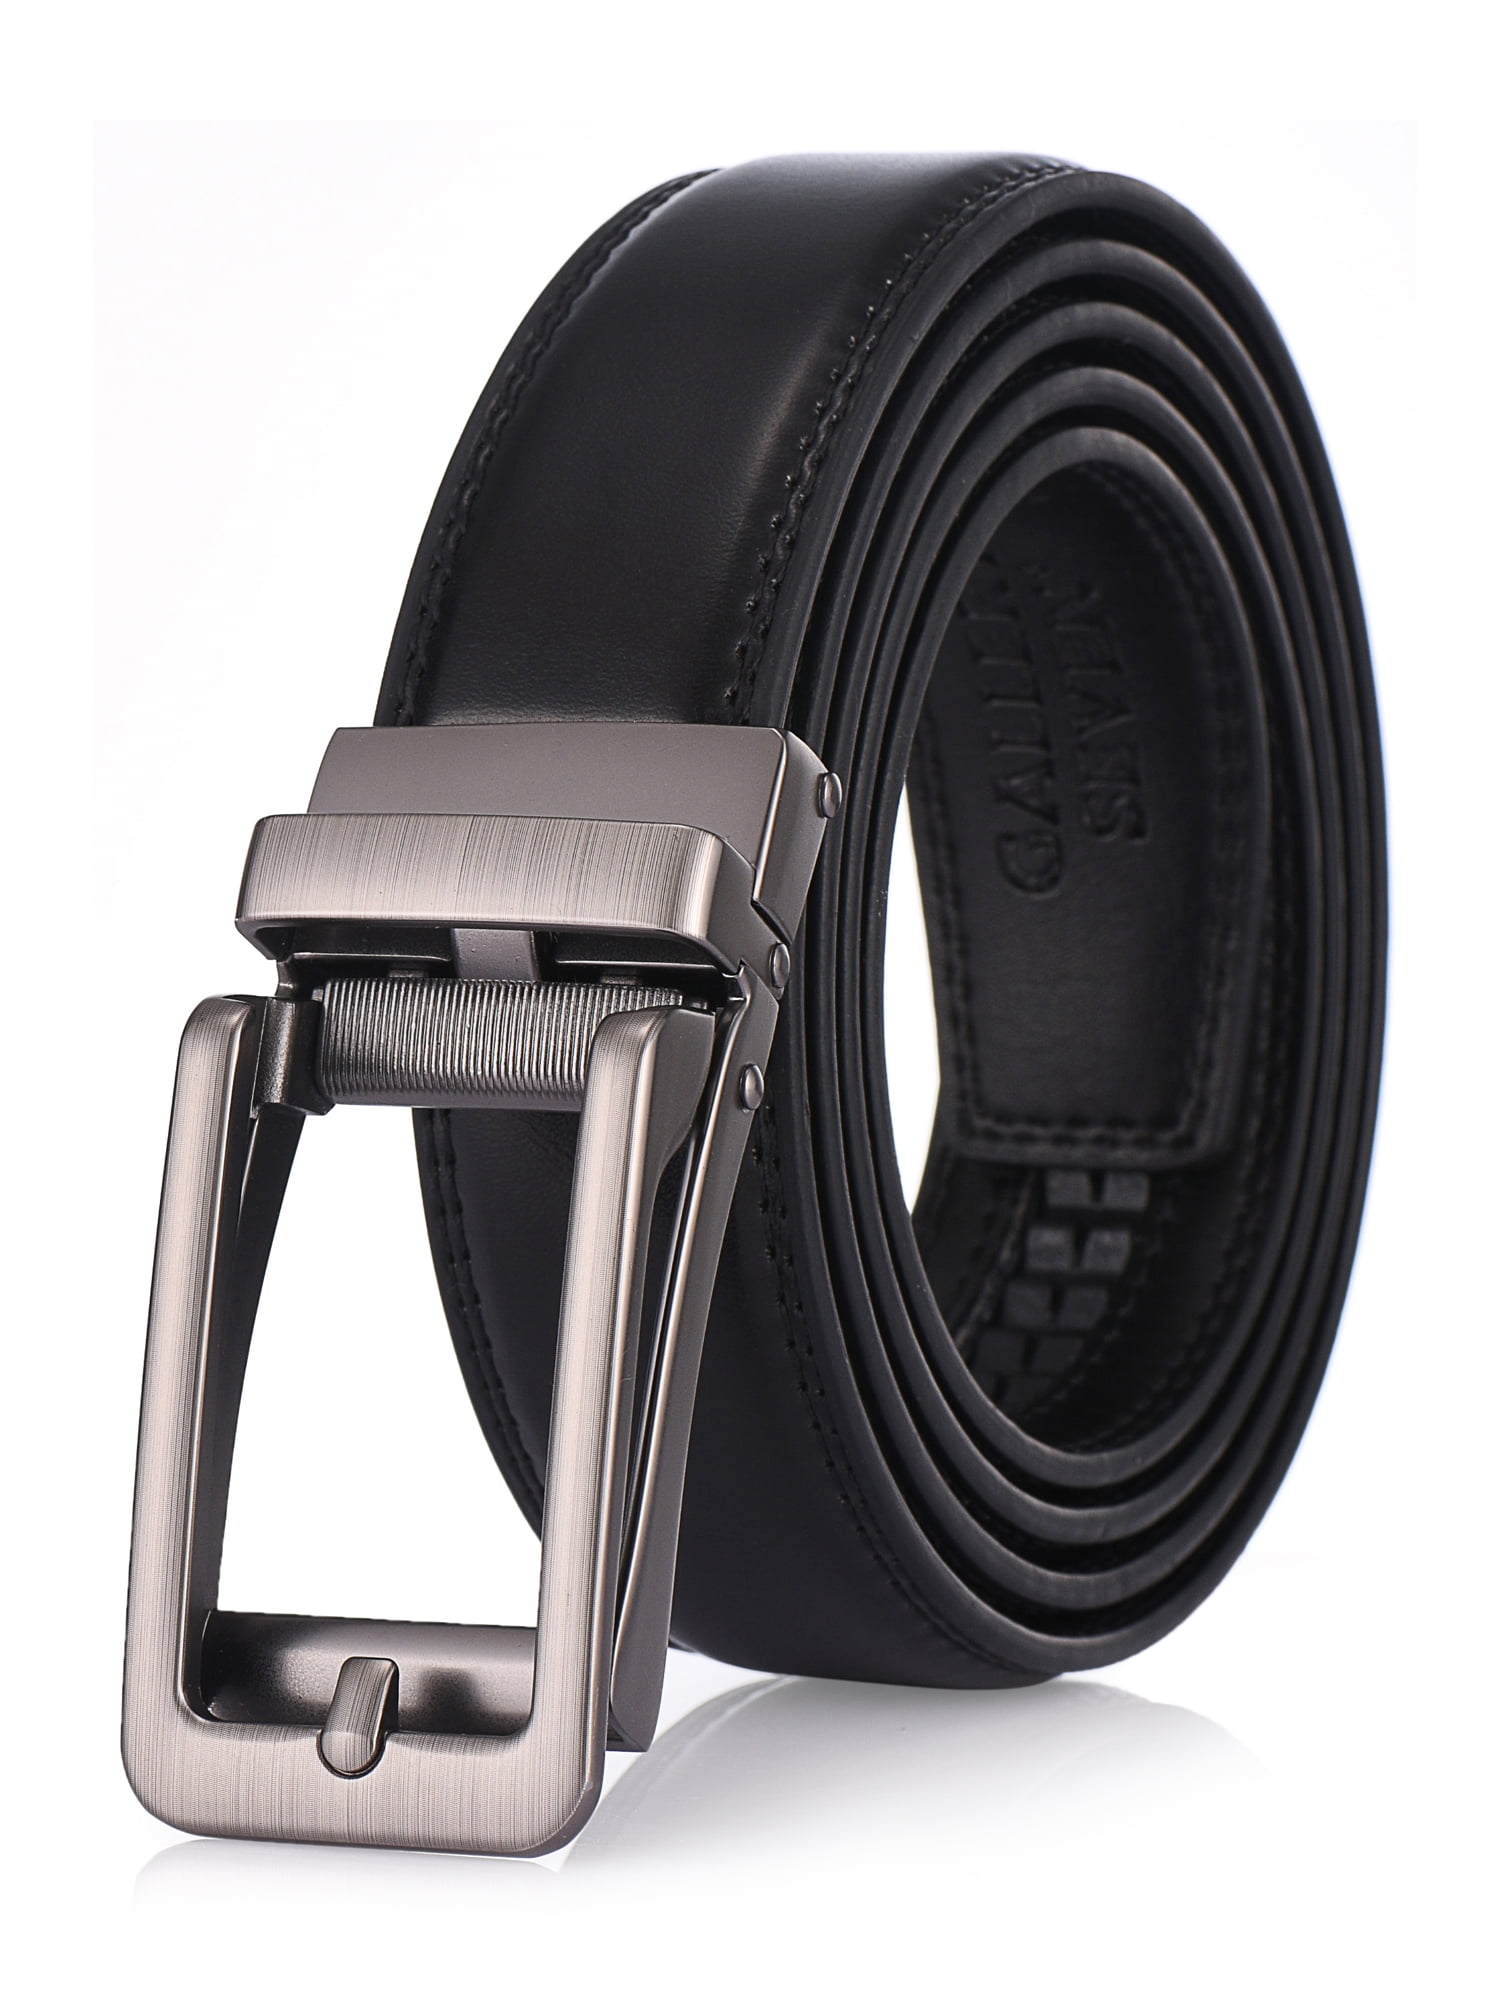 Gallery Seven Leather Ratchet Belt For Men - Adjustable Click Belt ...